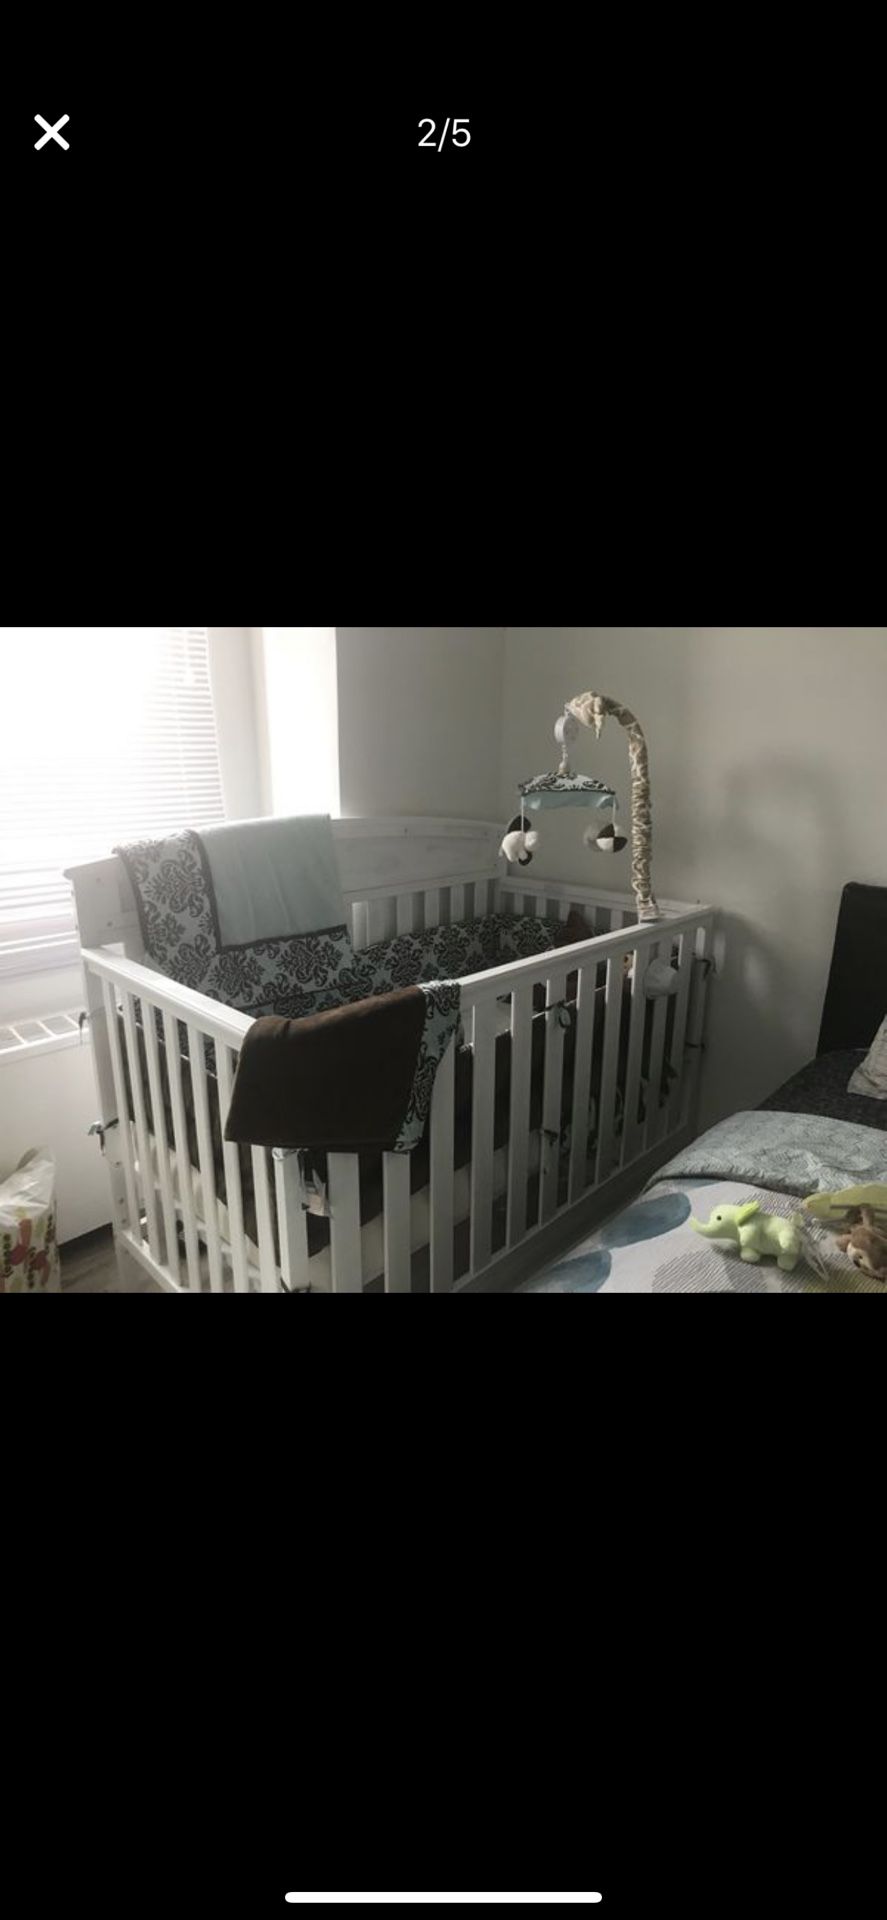 Baby crib, baby bedding and 2 crib mobiles